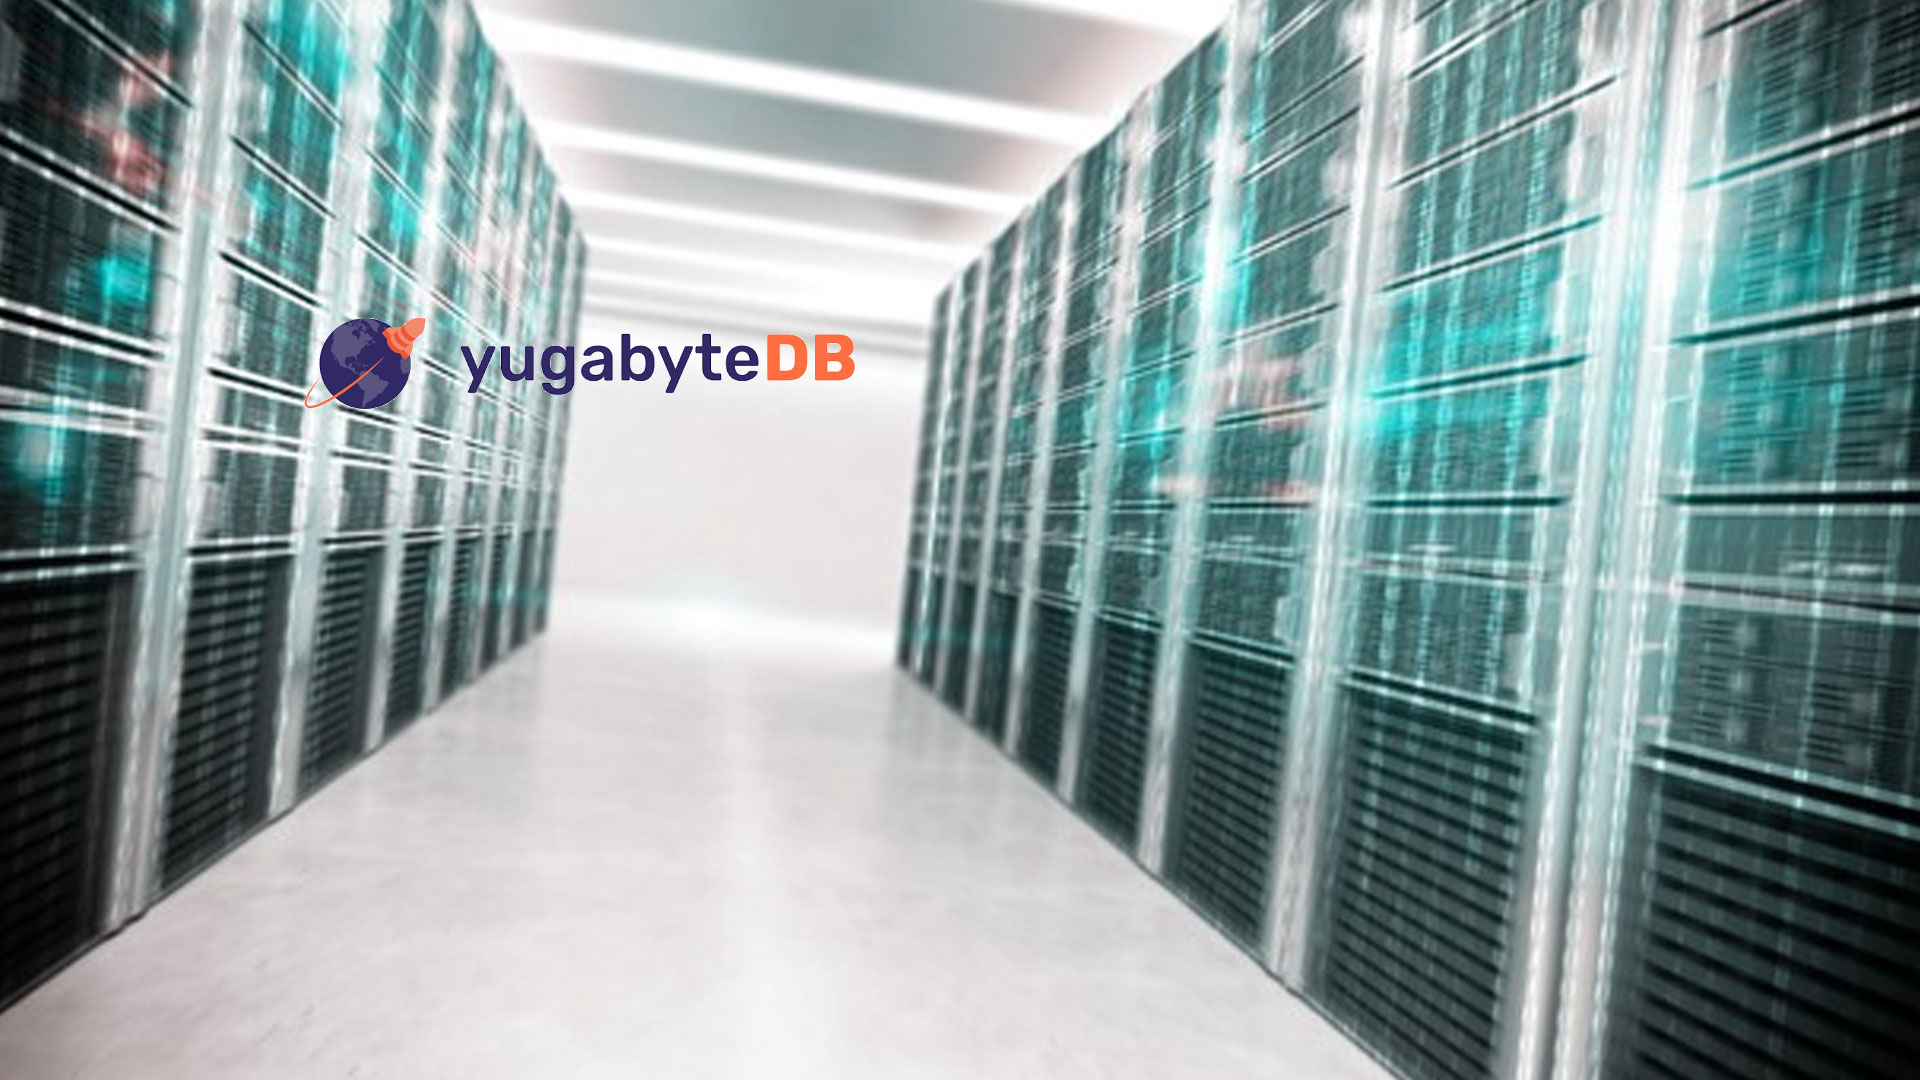 Database company Yugabyte receives